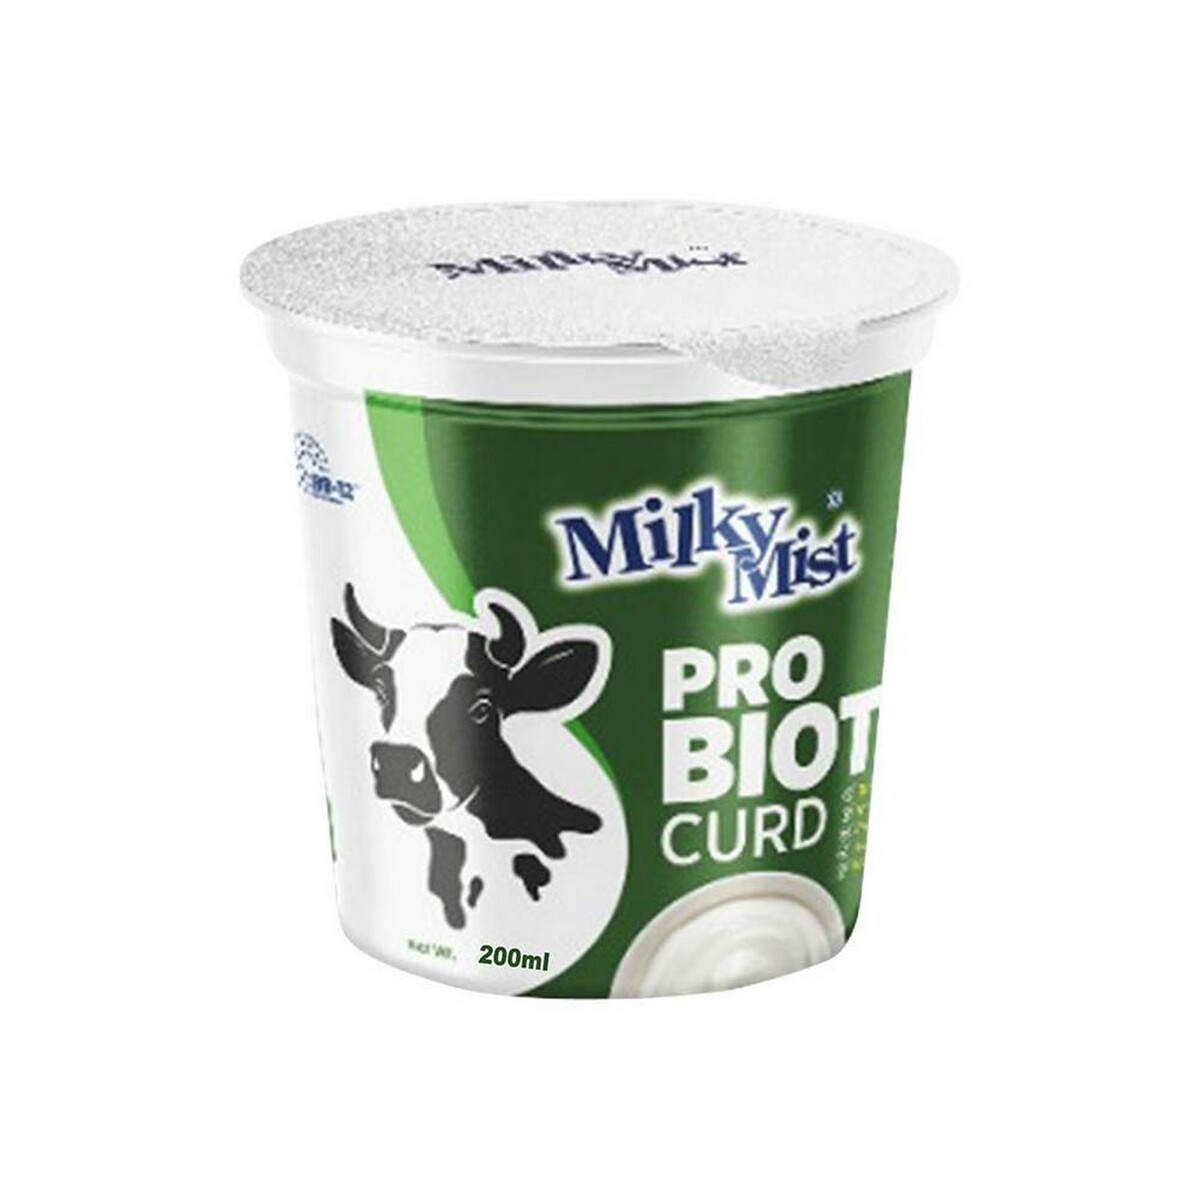 Milky Mist Probiotic Curd 200gm